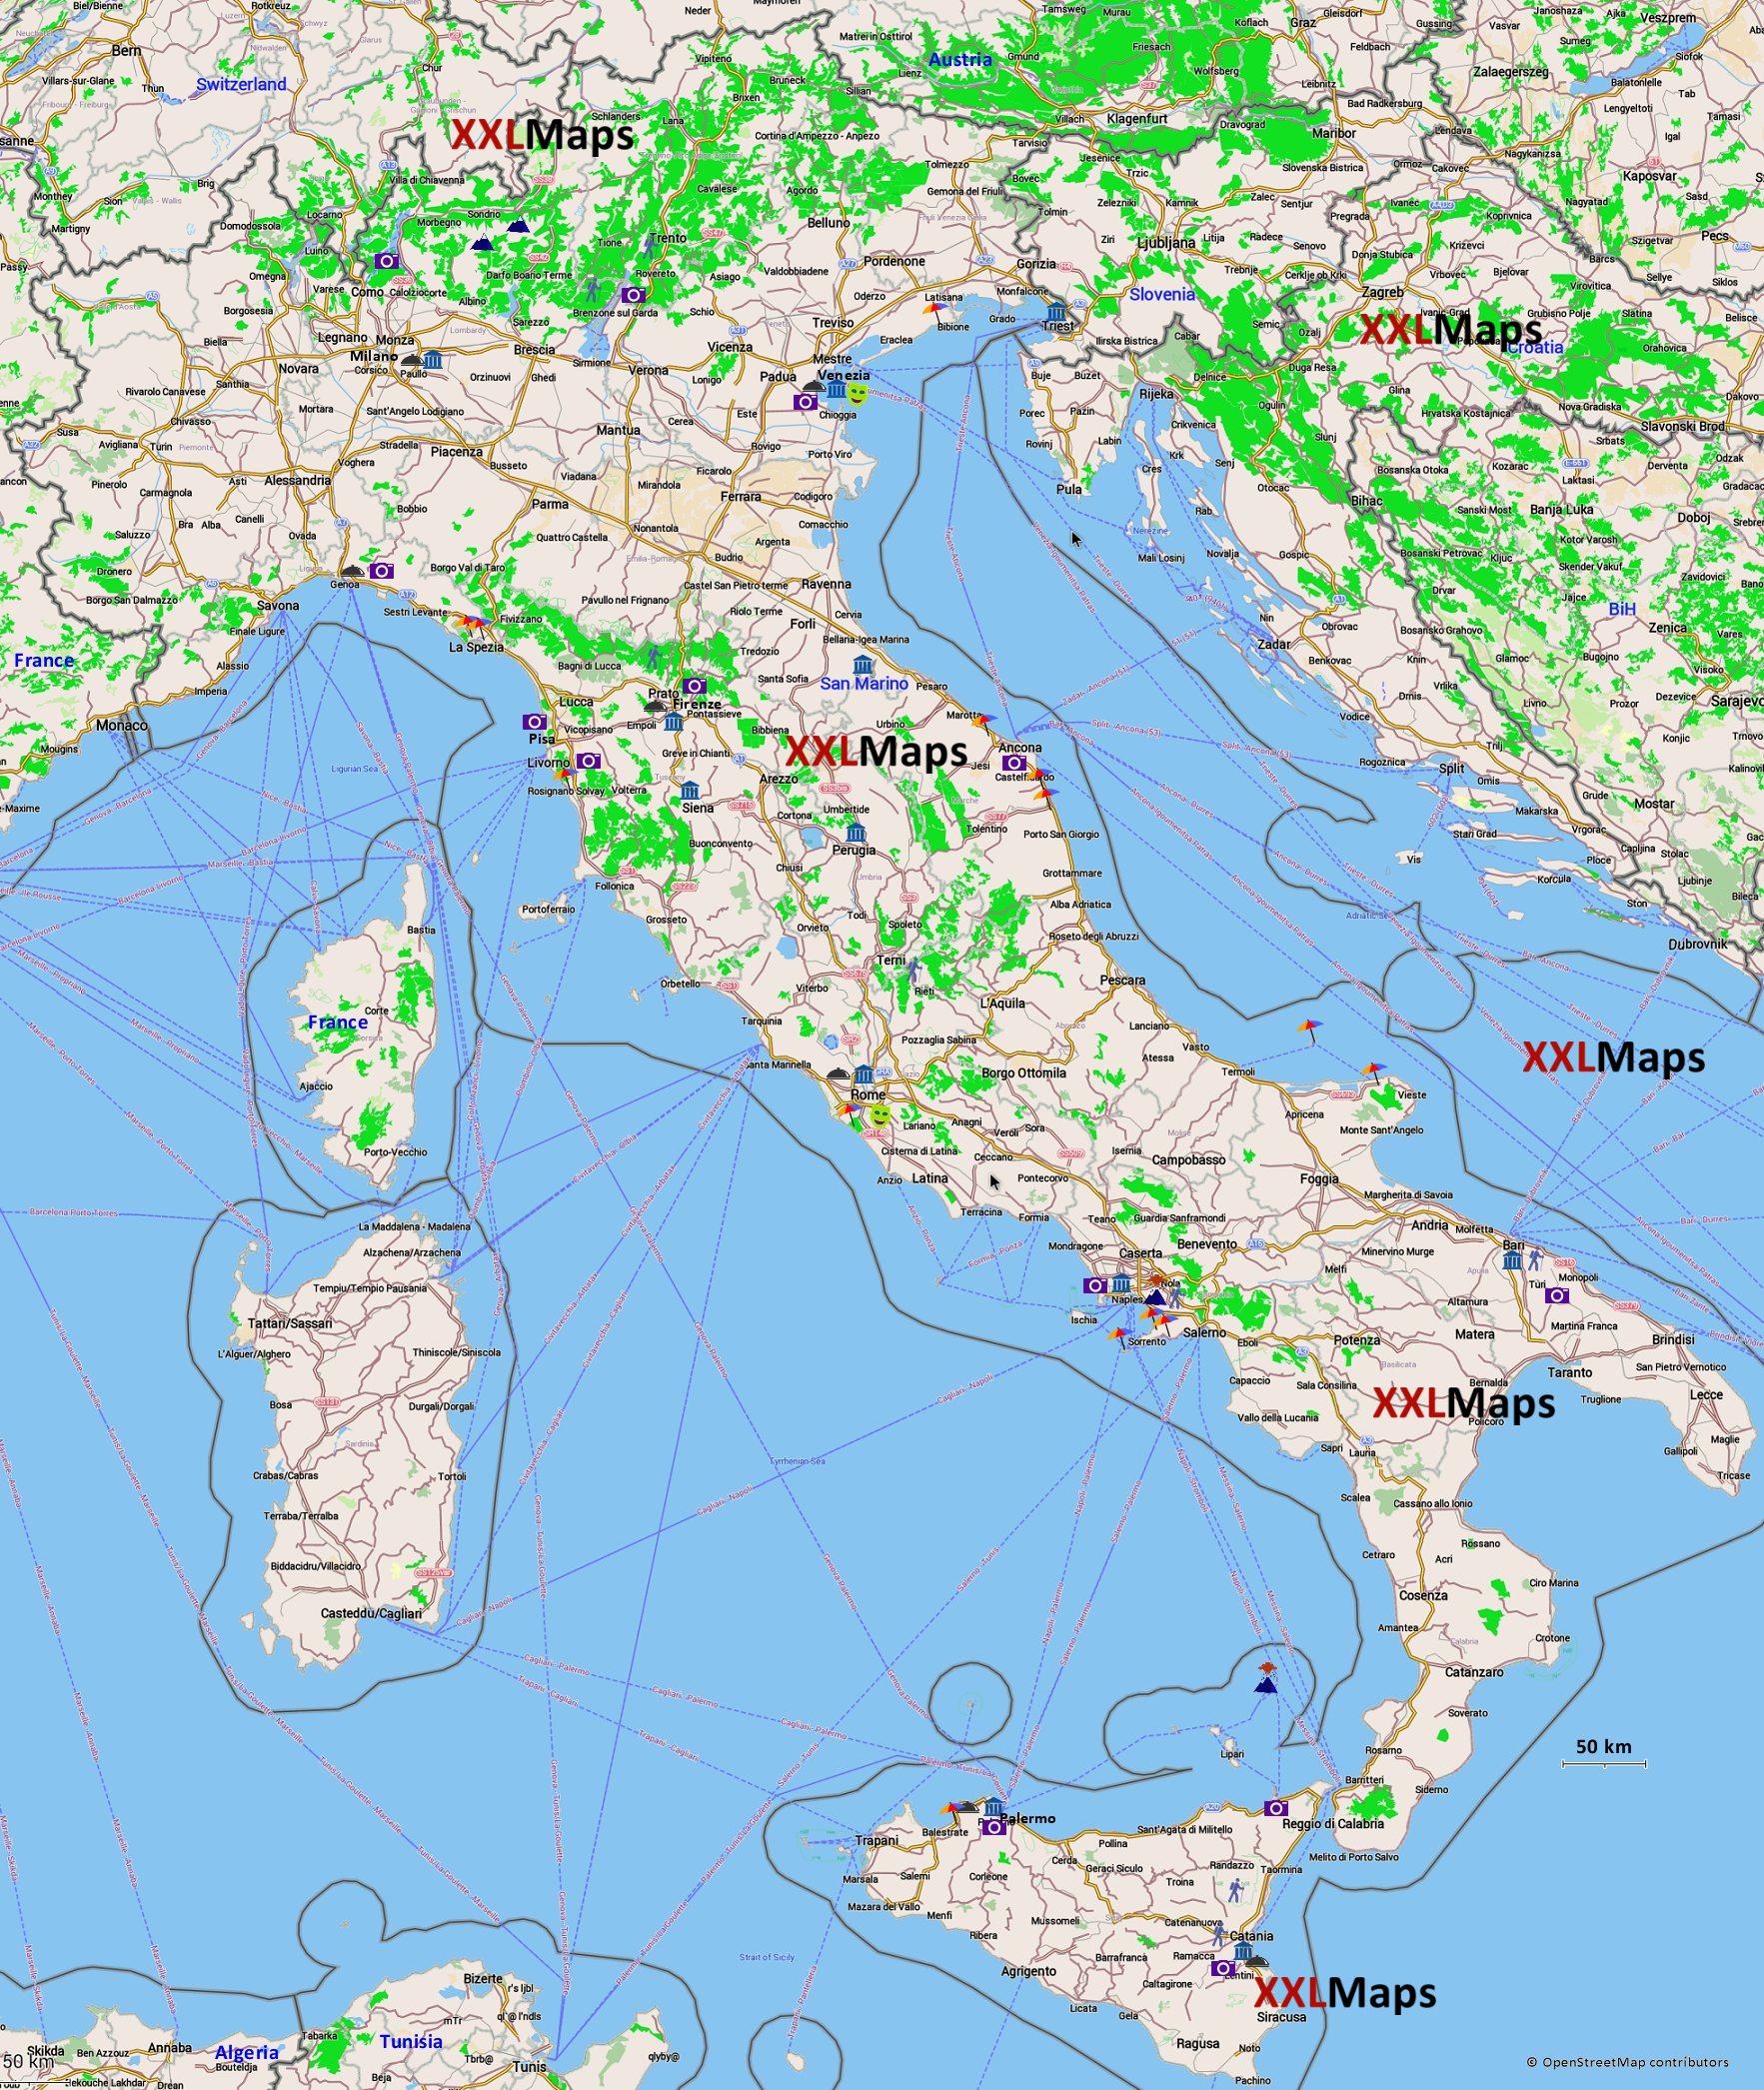 Toeristische kaart van Italië